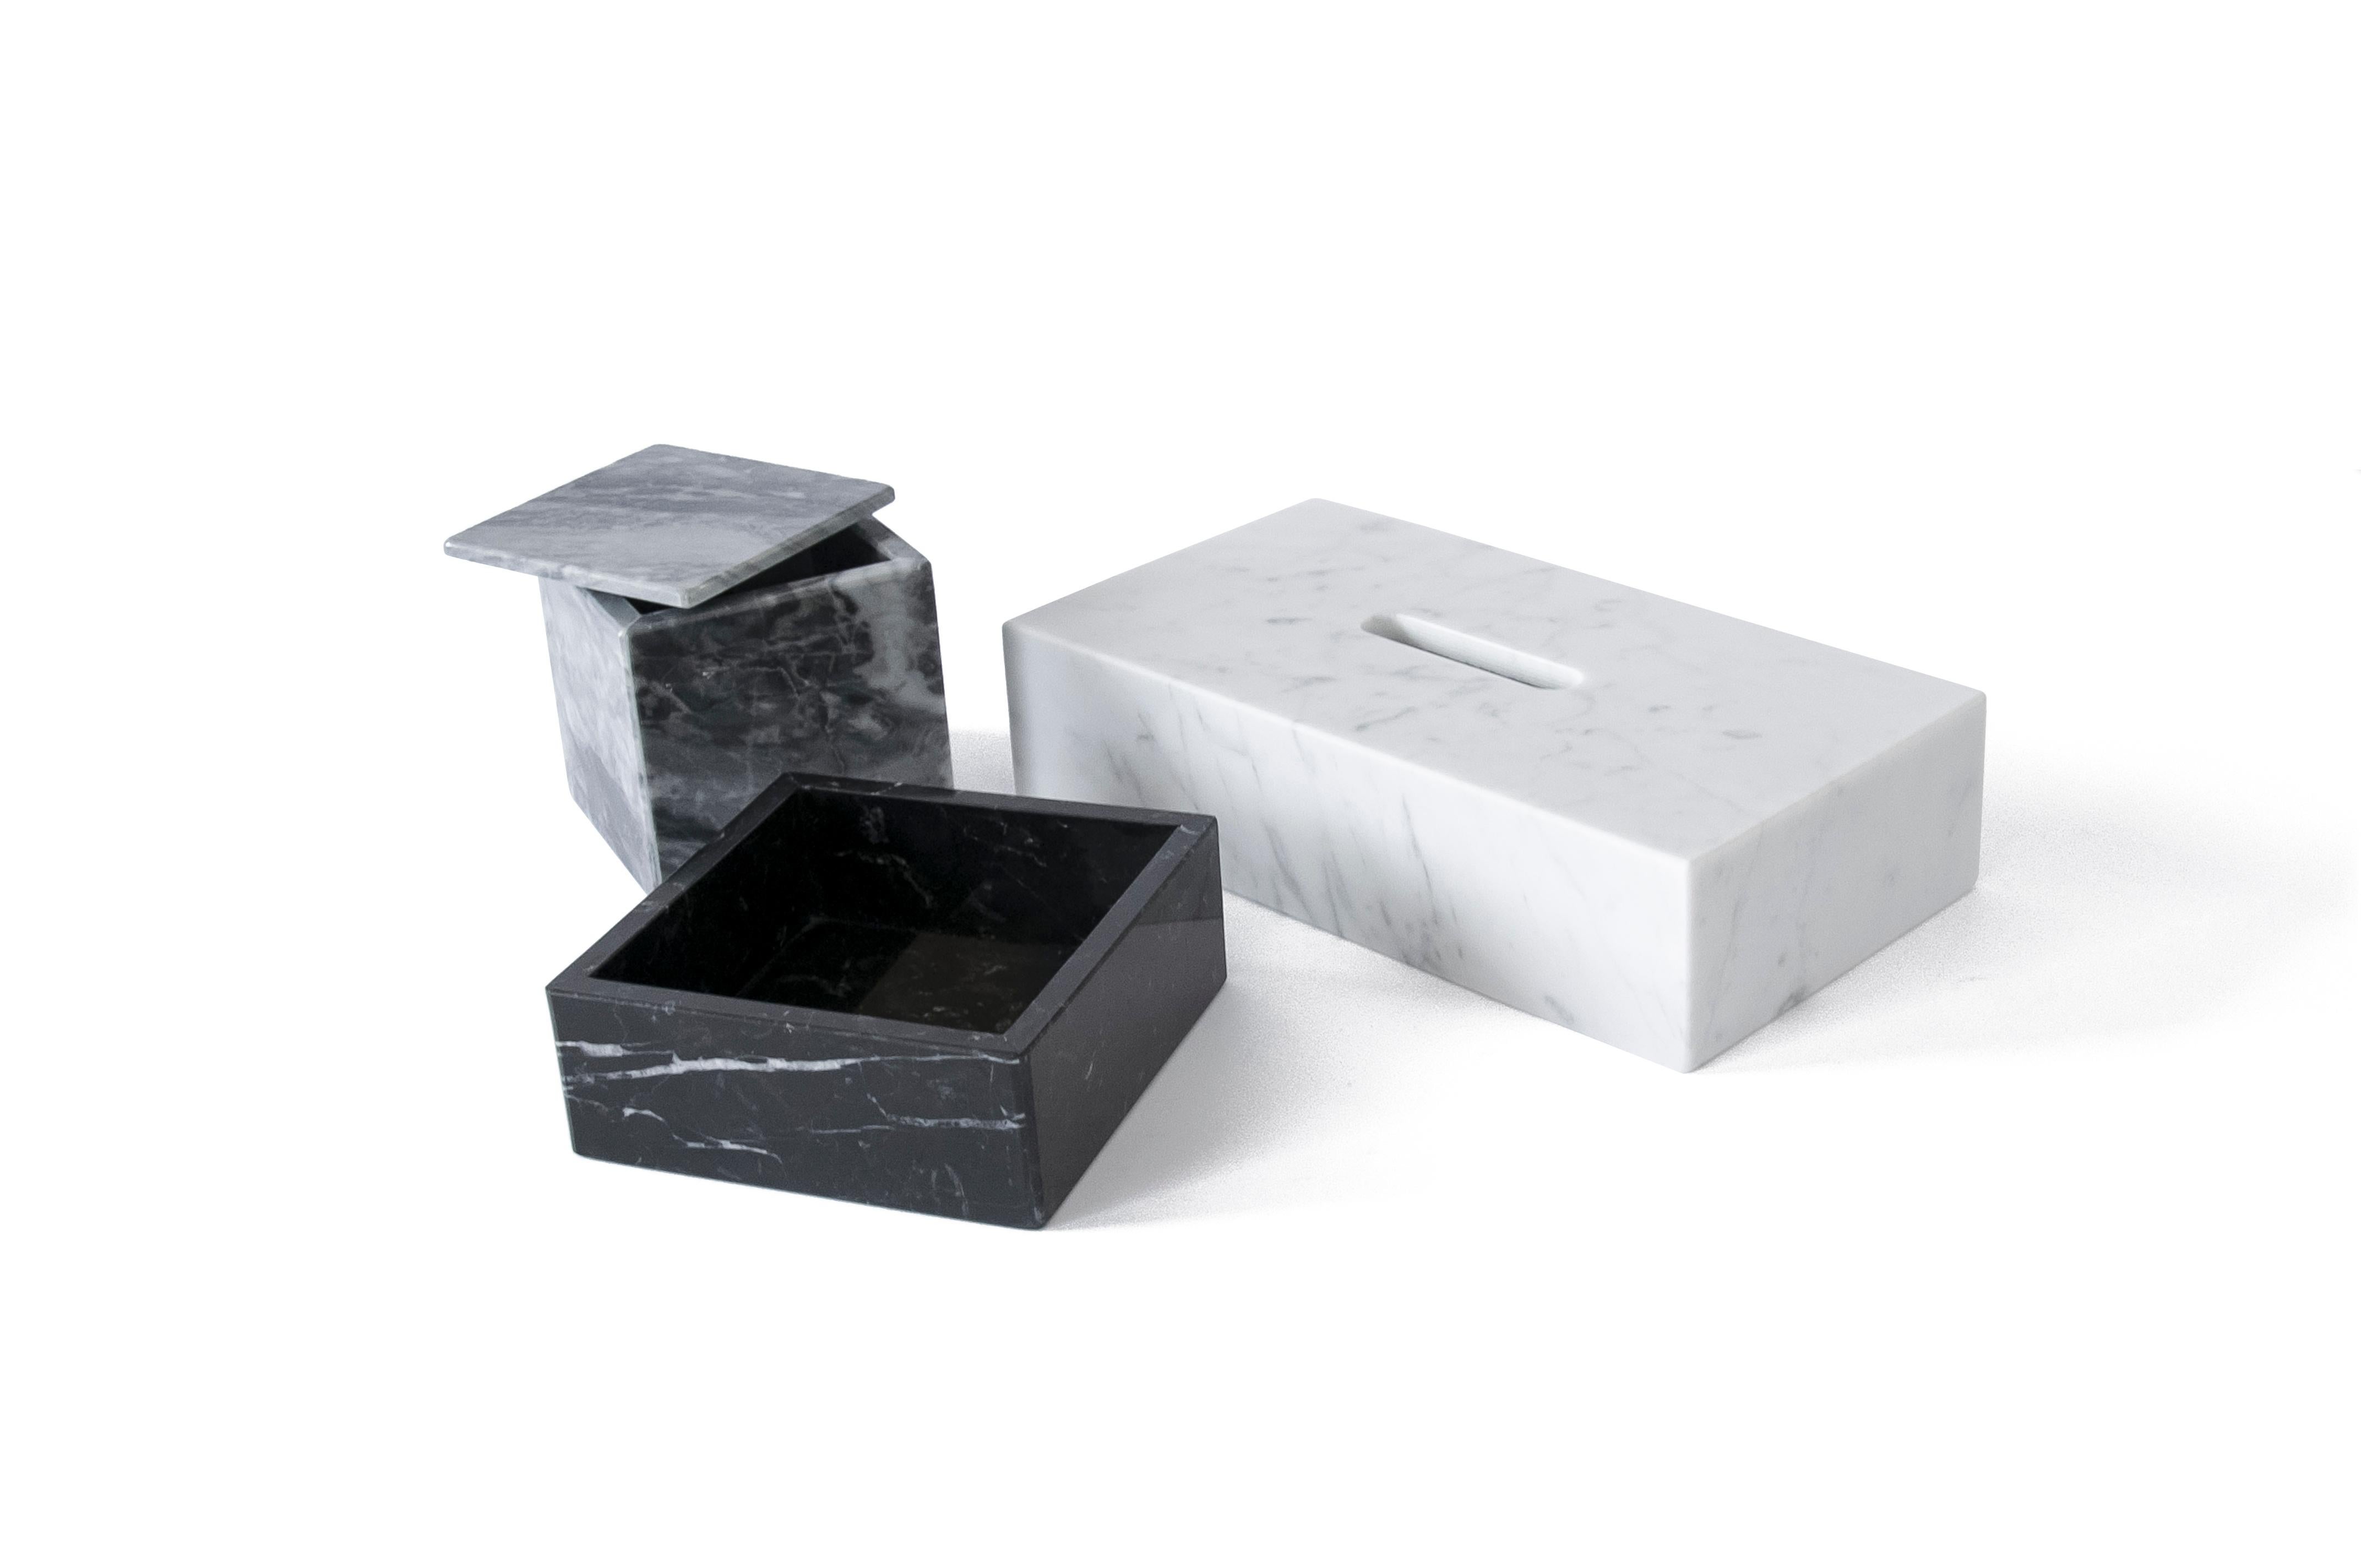 Set bestehend aus einer rechteckigen Taschentuchbox aus weißem Carrara-Marmor (14x26x6cm), einem Boxenhalter mit Deckel aus grauem Bardiglio-Marmor (9,5x9,5x9,5cm) und einer Baumwollbox aus schwarzem Marquina-Marmor (13x13,5x5cm) 

Produktgewicht